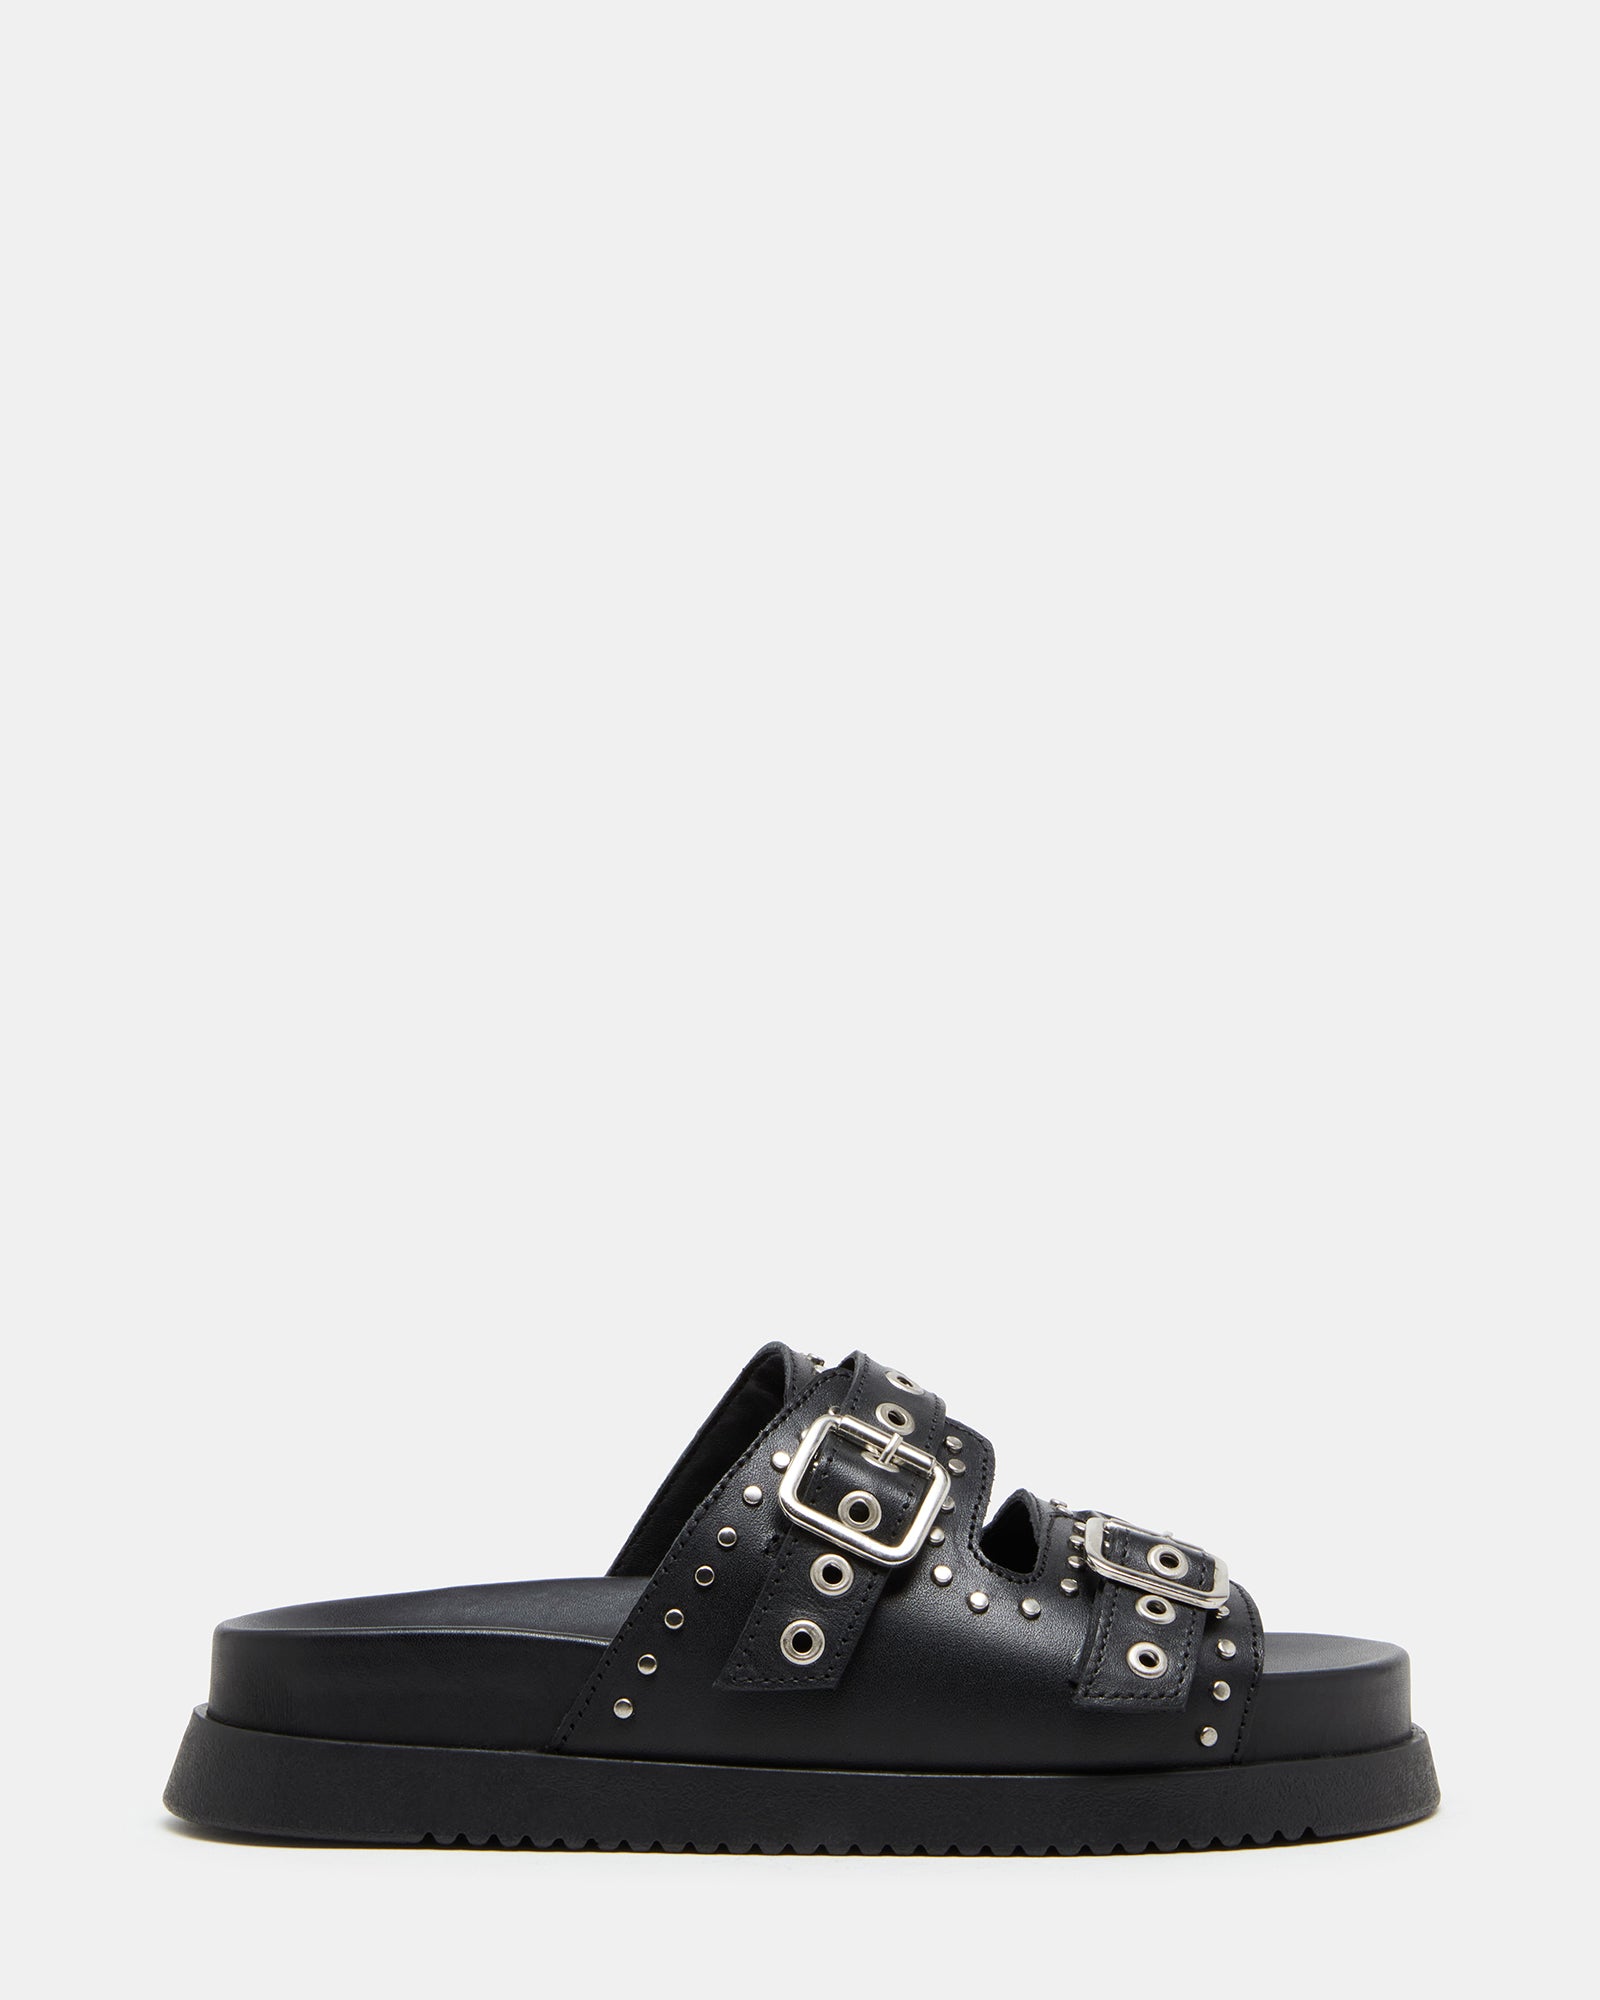 MALEK Black Leather Studded Footbed Slide | Women's Sandals – Steve Madden